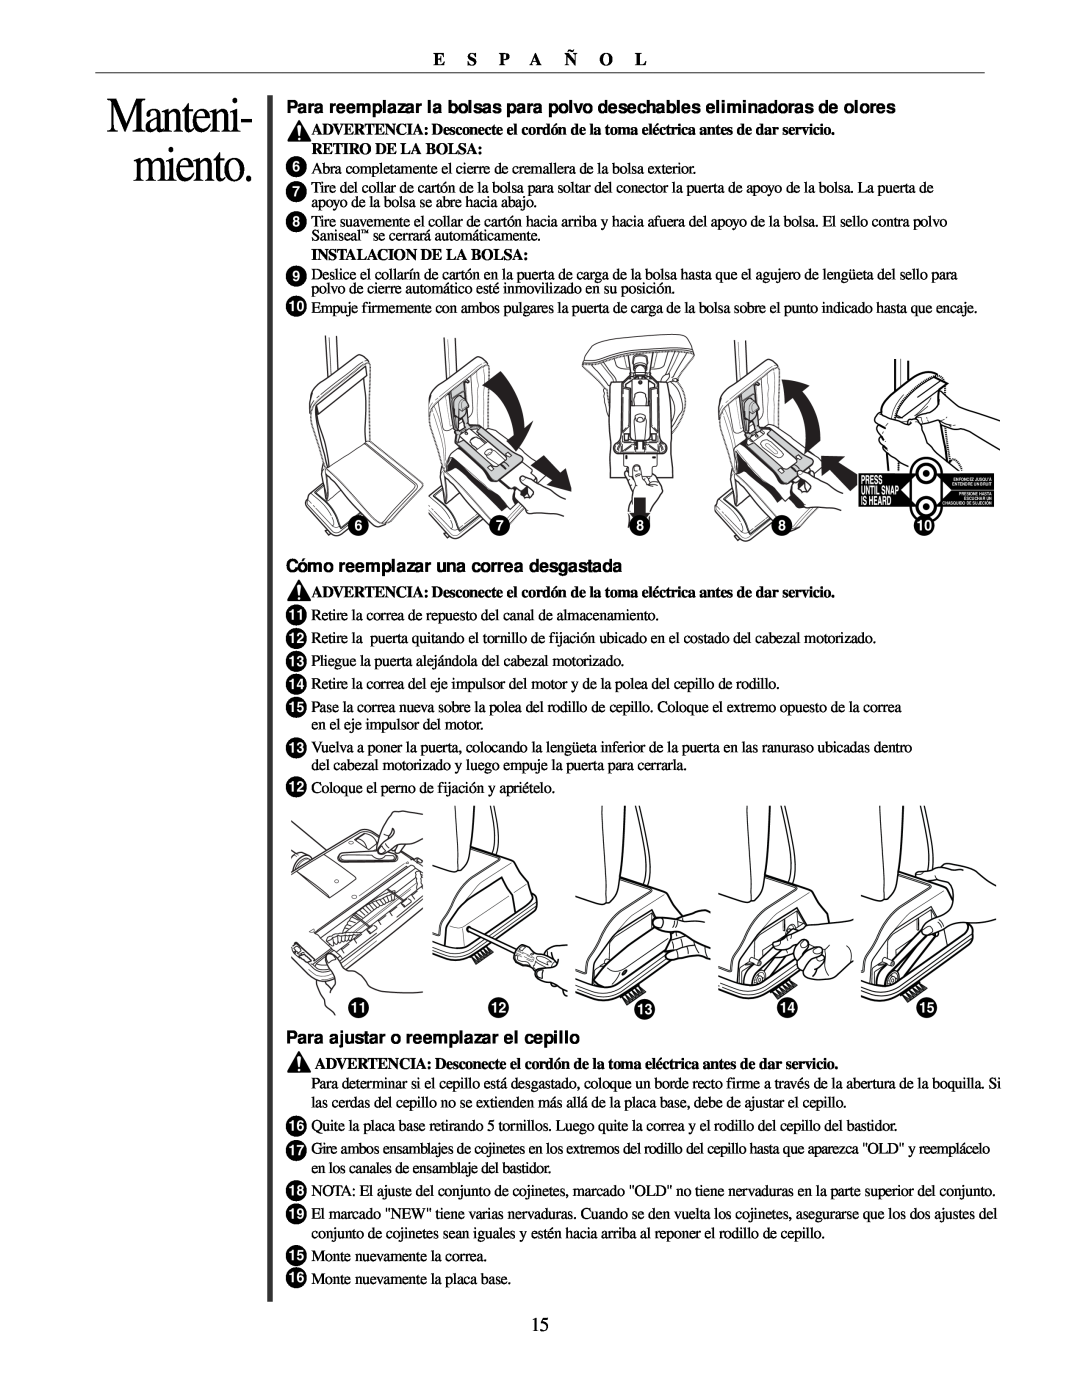 Oreck U3771 manual Cómo reemplazar una correa desgastada, Para ajustar o reemplazar el cepillo, miento, Manteni 